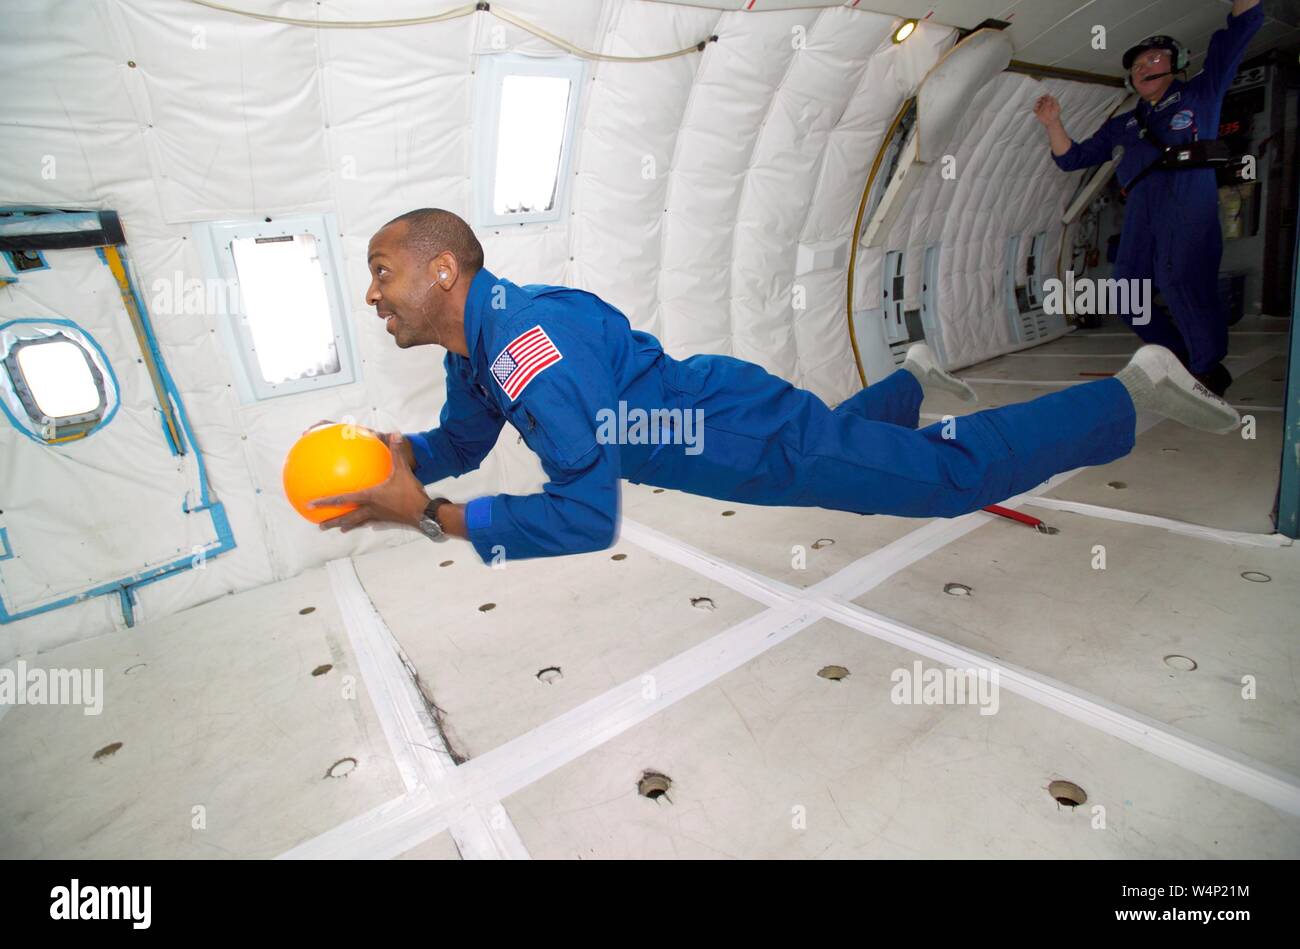 El astronauta candidato Bobby Satcher durante el vuelo en gravedad cero a bordo de un avión KC-135, 13 de octubre de 2004. Imagen cortesía de la Administración Nacional de Aeronáutica y del Espacio (NASA). () Foto de stock